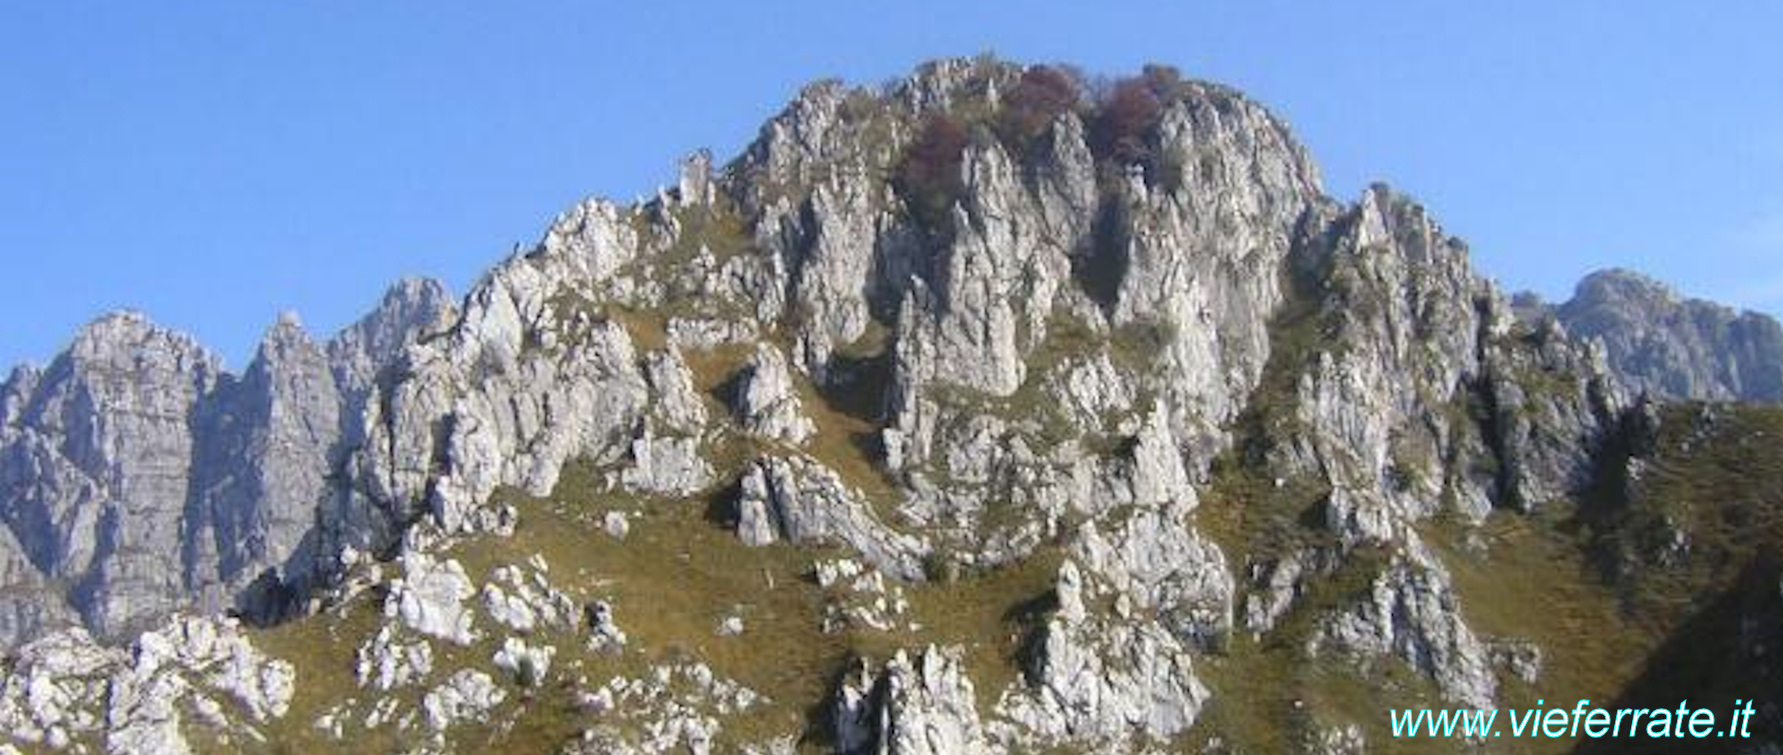 Cresta della Giumenta - Gruppo del Resegone